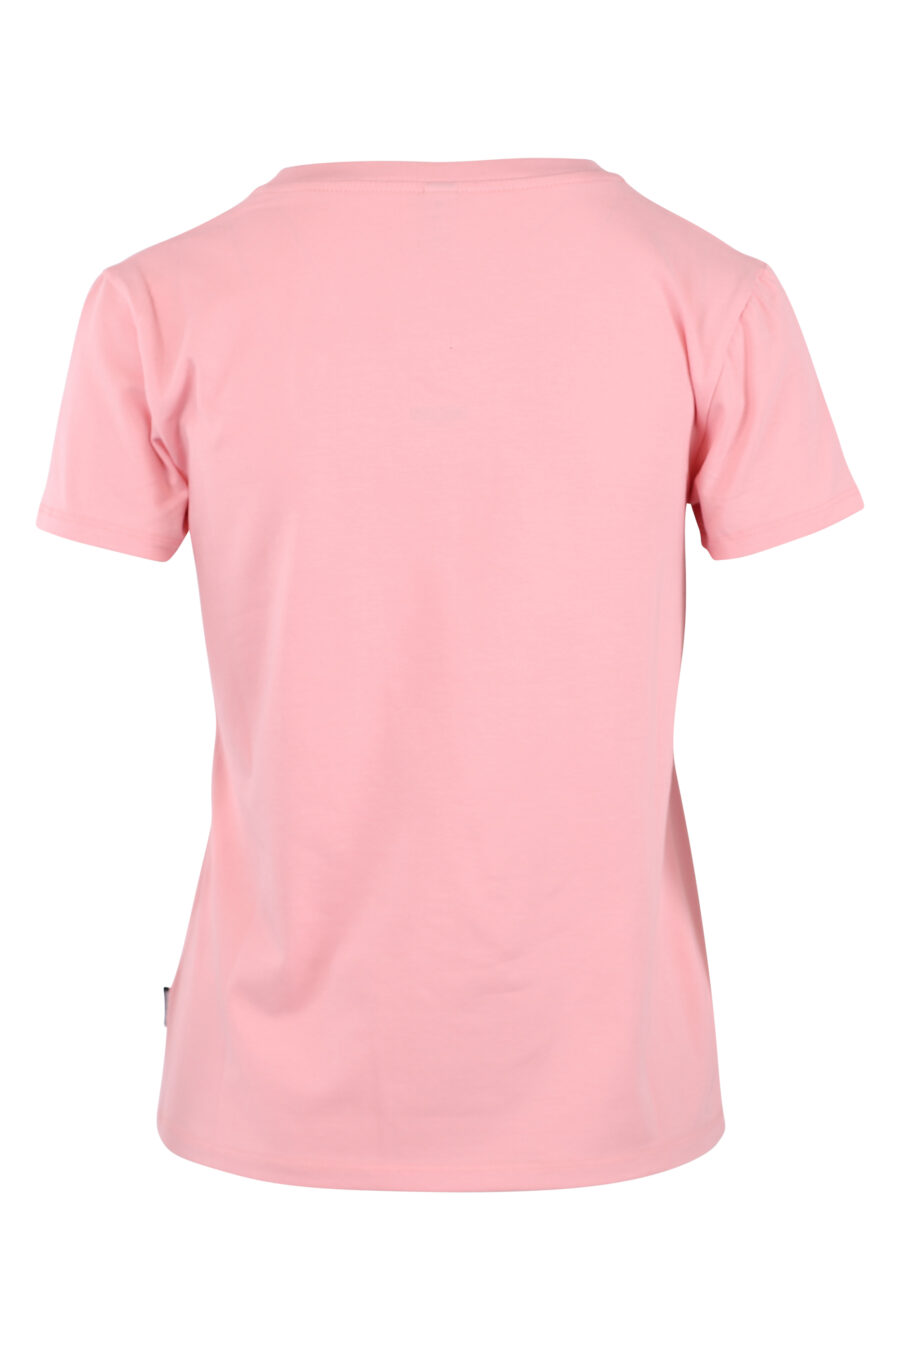 Camiseta rosa con logo oso pequeño - IMG 6238